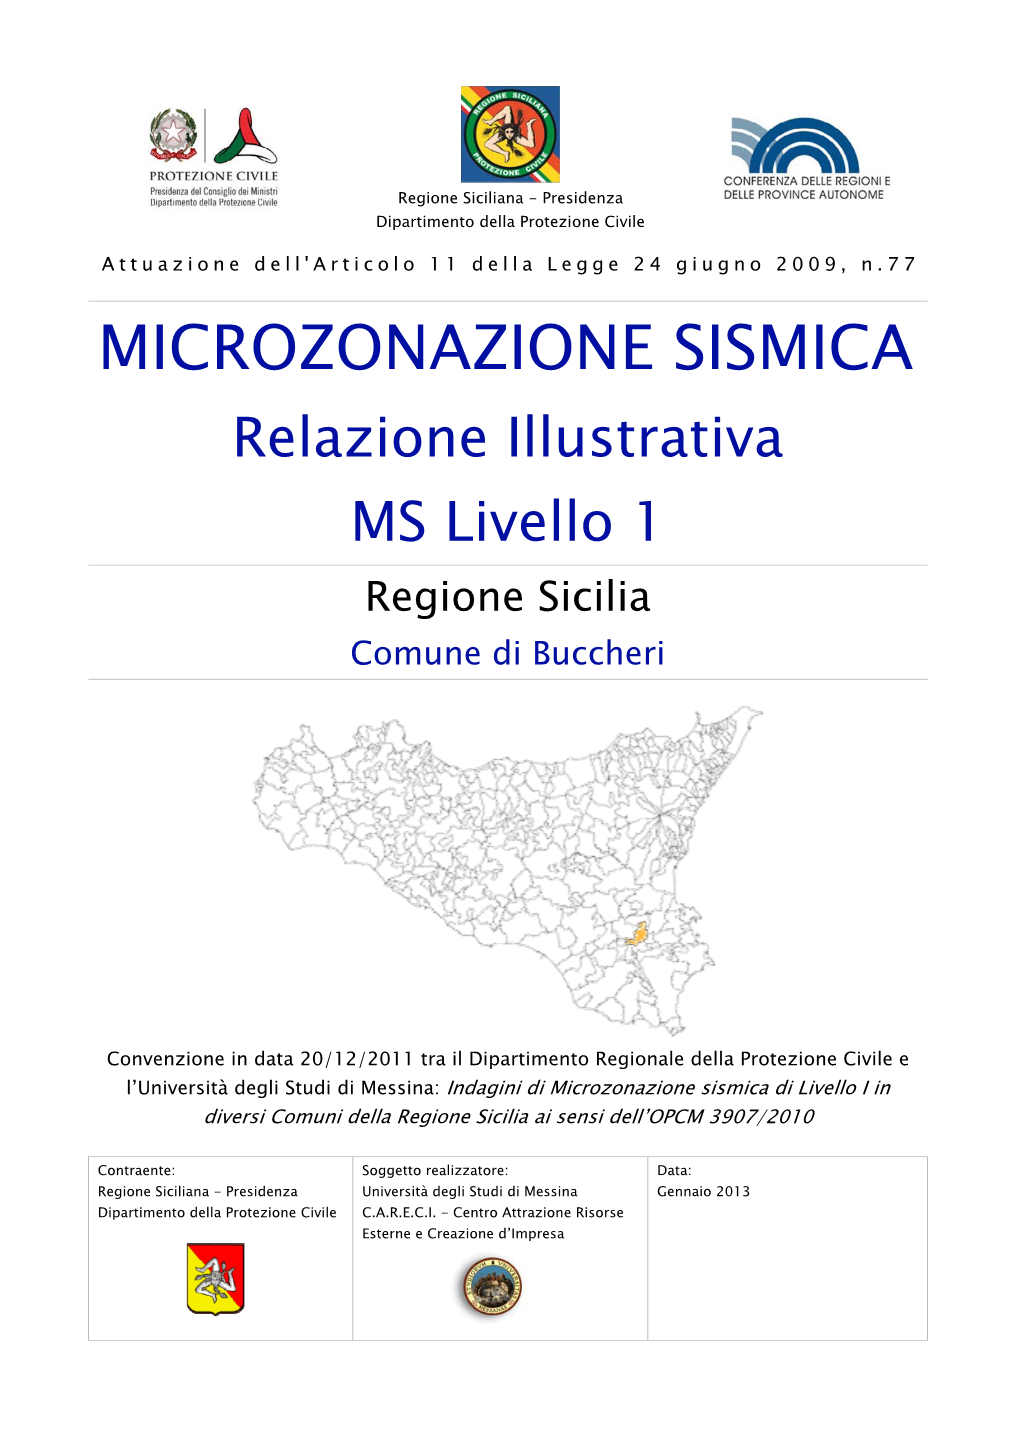 MICROZONAZIONE SISMICA Relazione Illustrativa MS Livello 1 Regione Sicilia Comune Di Buccheri